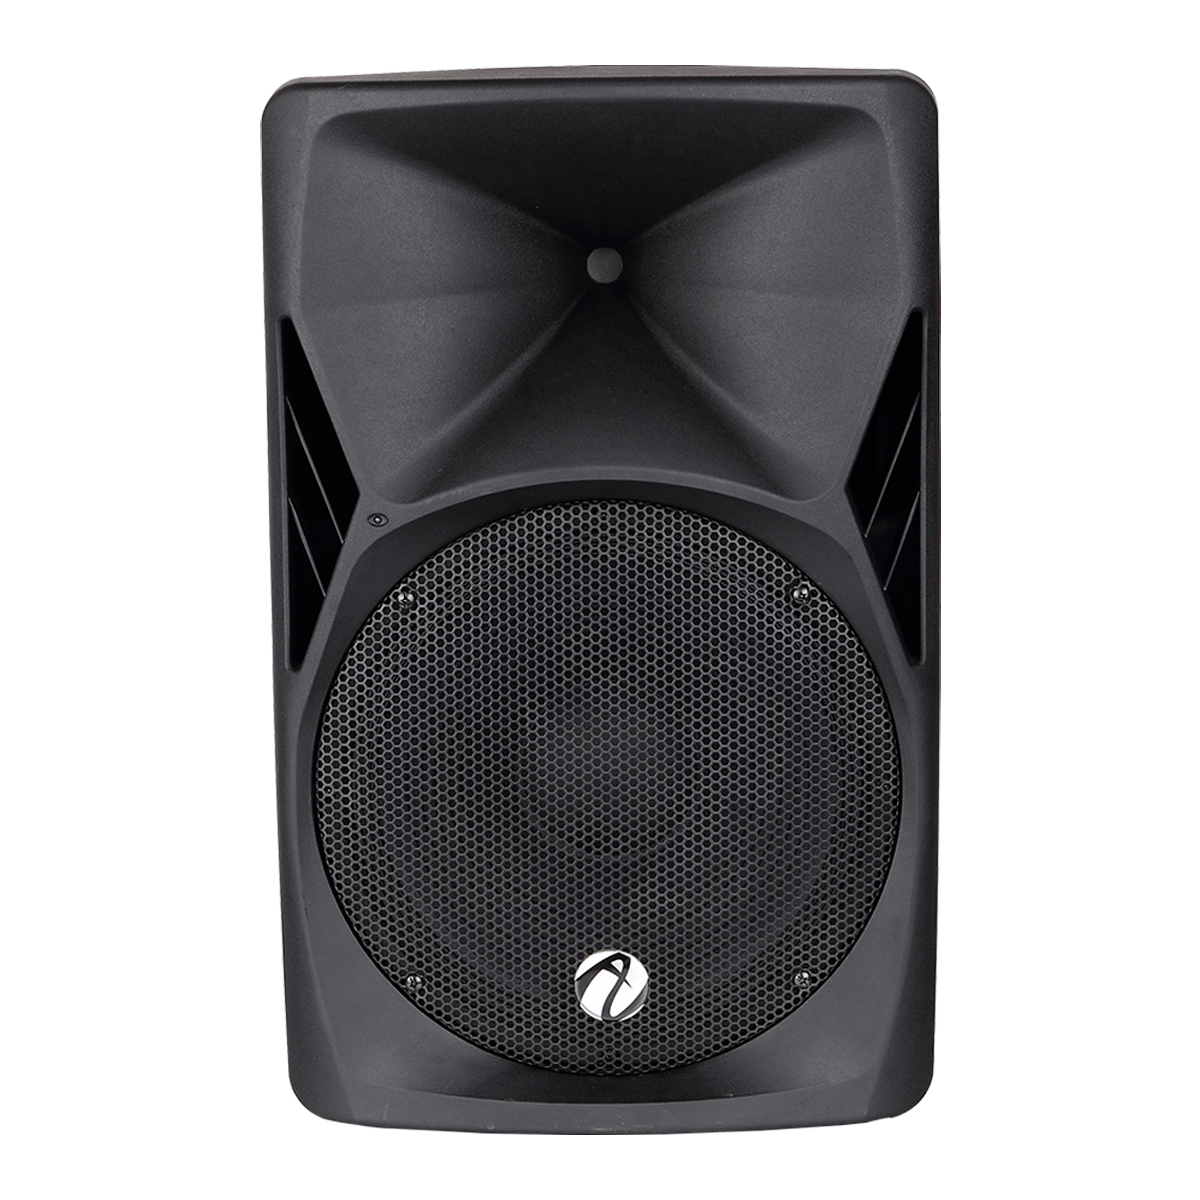 ZTX audio SX-115 активная акустическая система с 15" динамиком